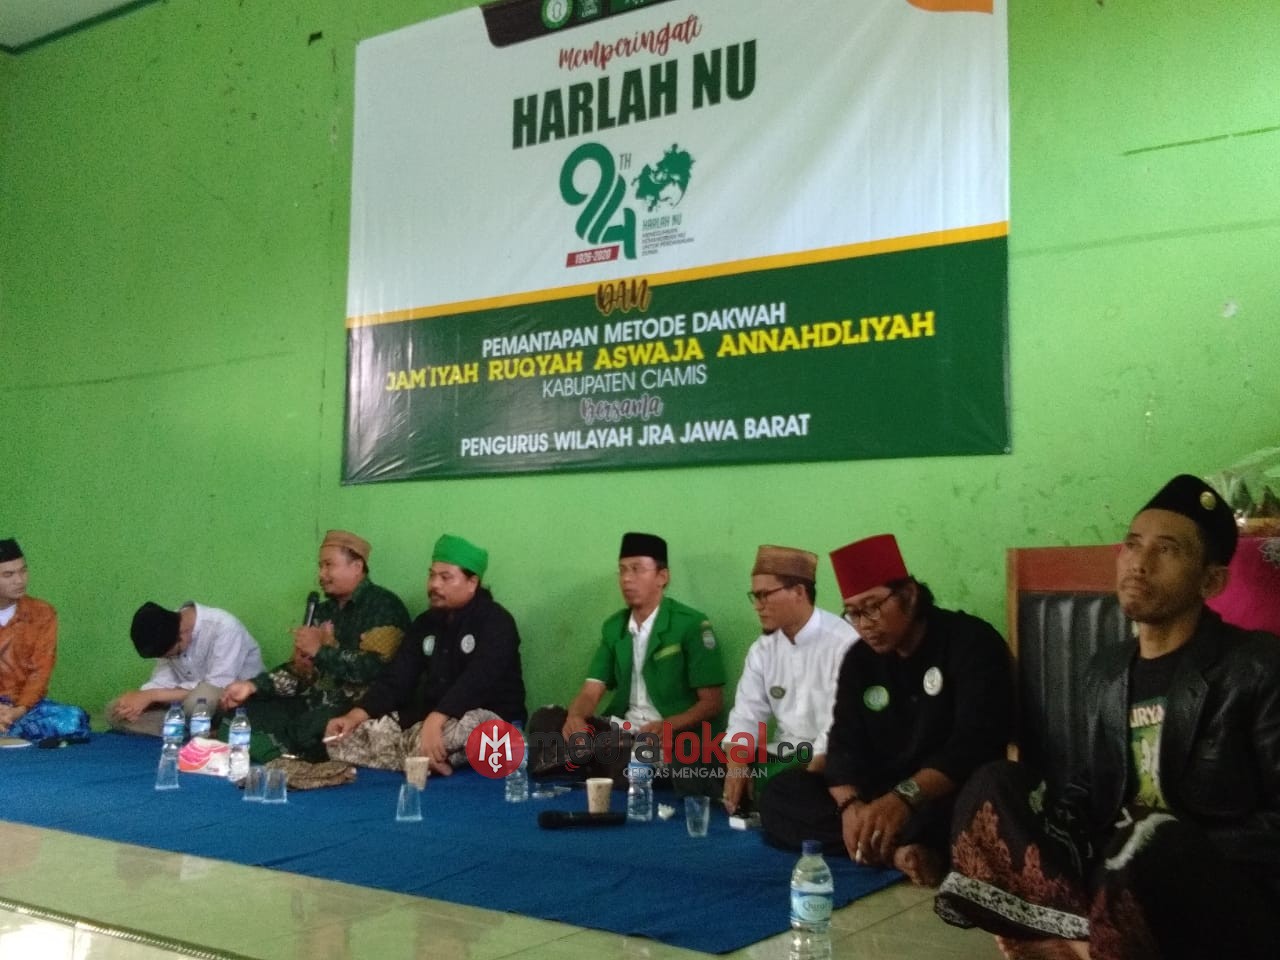 PC JRA NU Kabupaten Ciamis Peringati Harlah NU ke-94